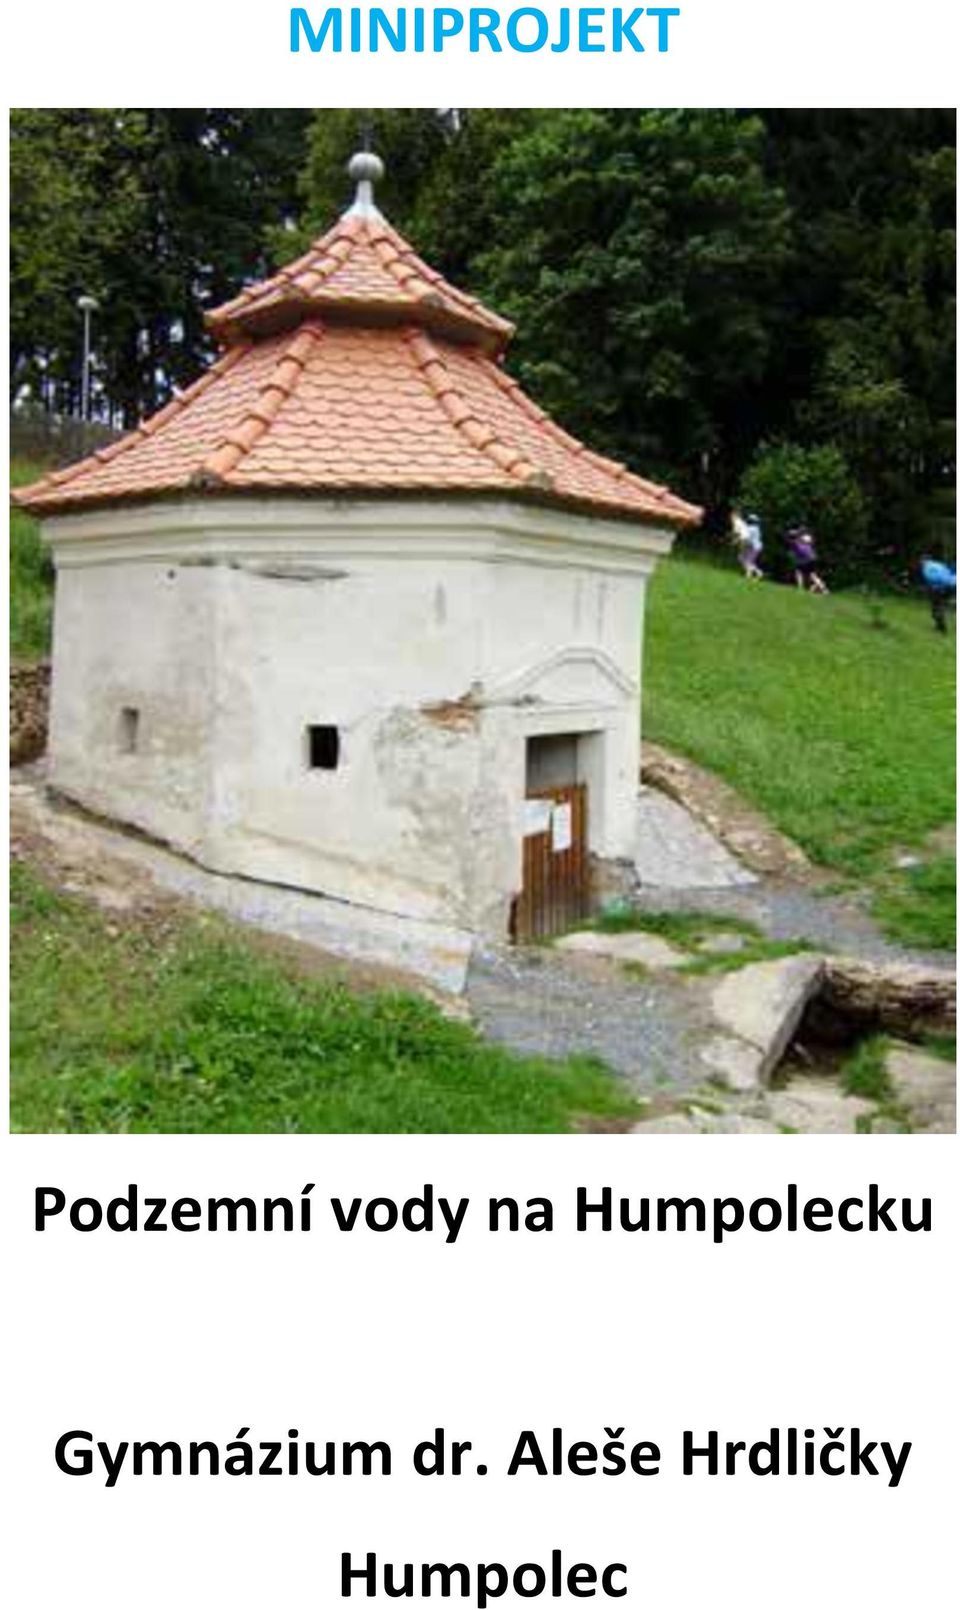 Humpolecku